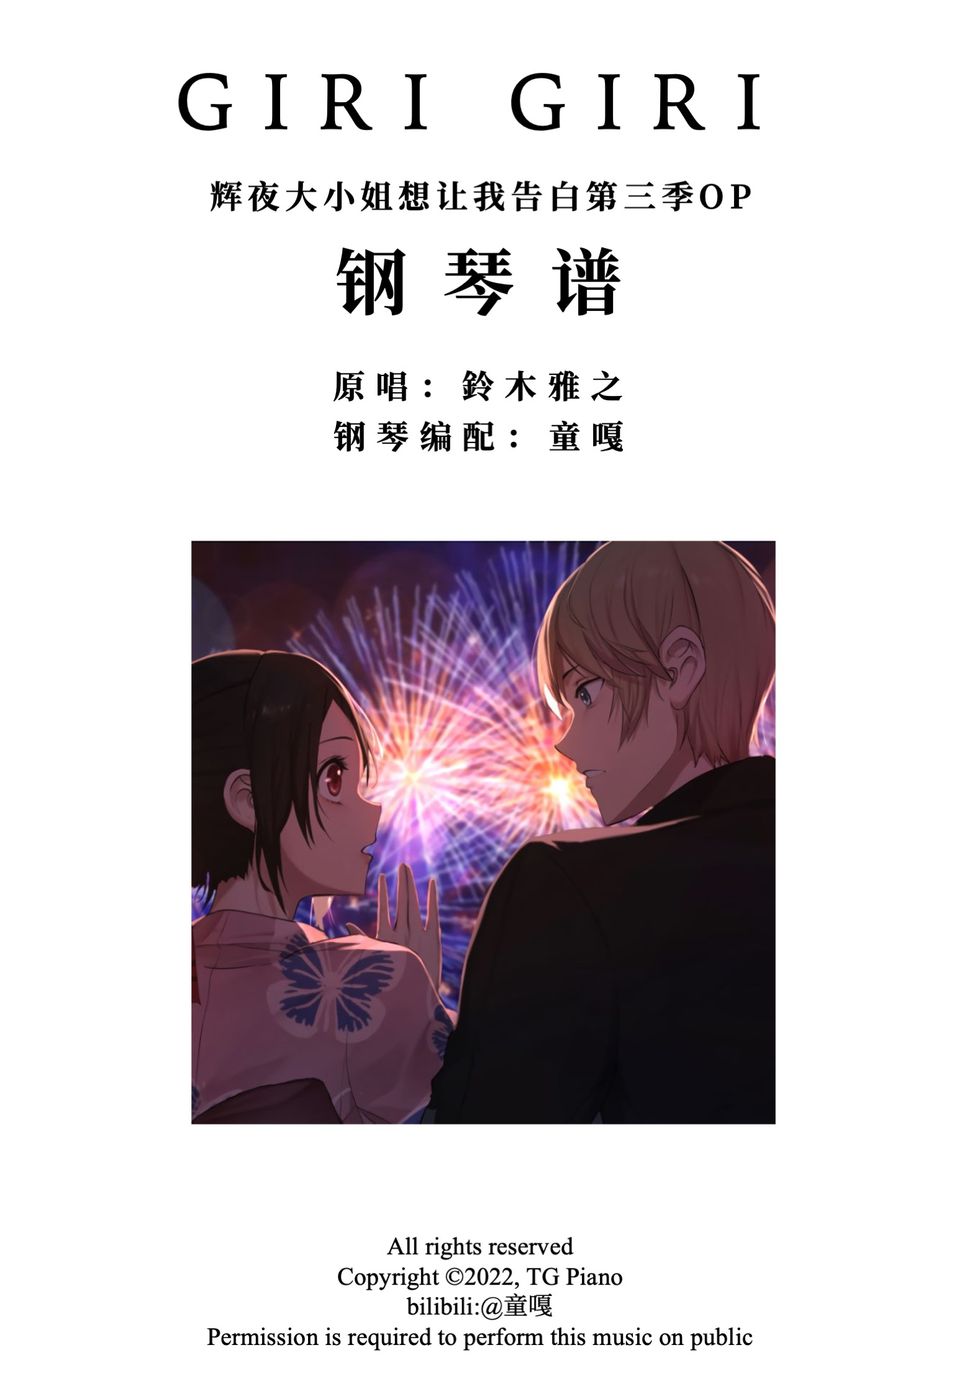 Kaguya-sama: Love is War - GIRI GIRI by TG Piano